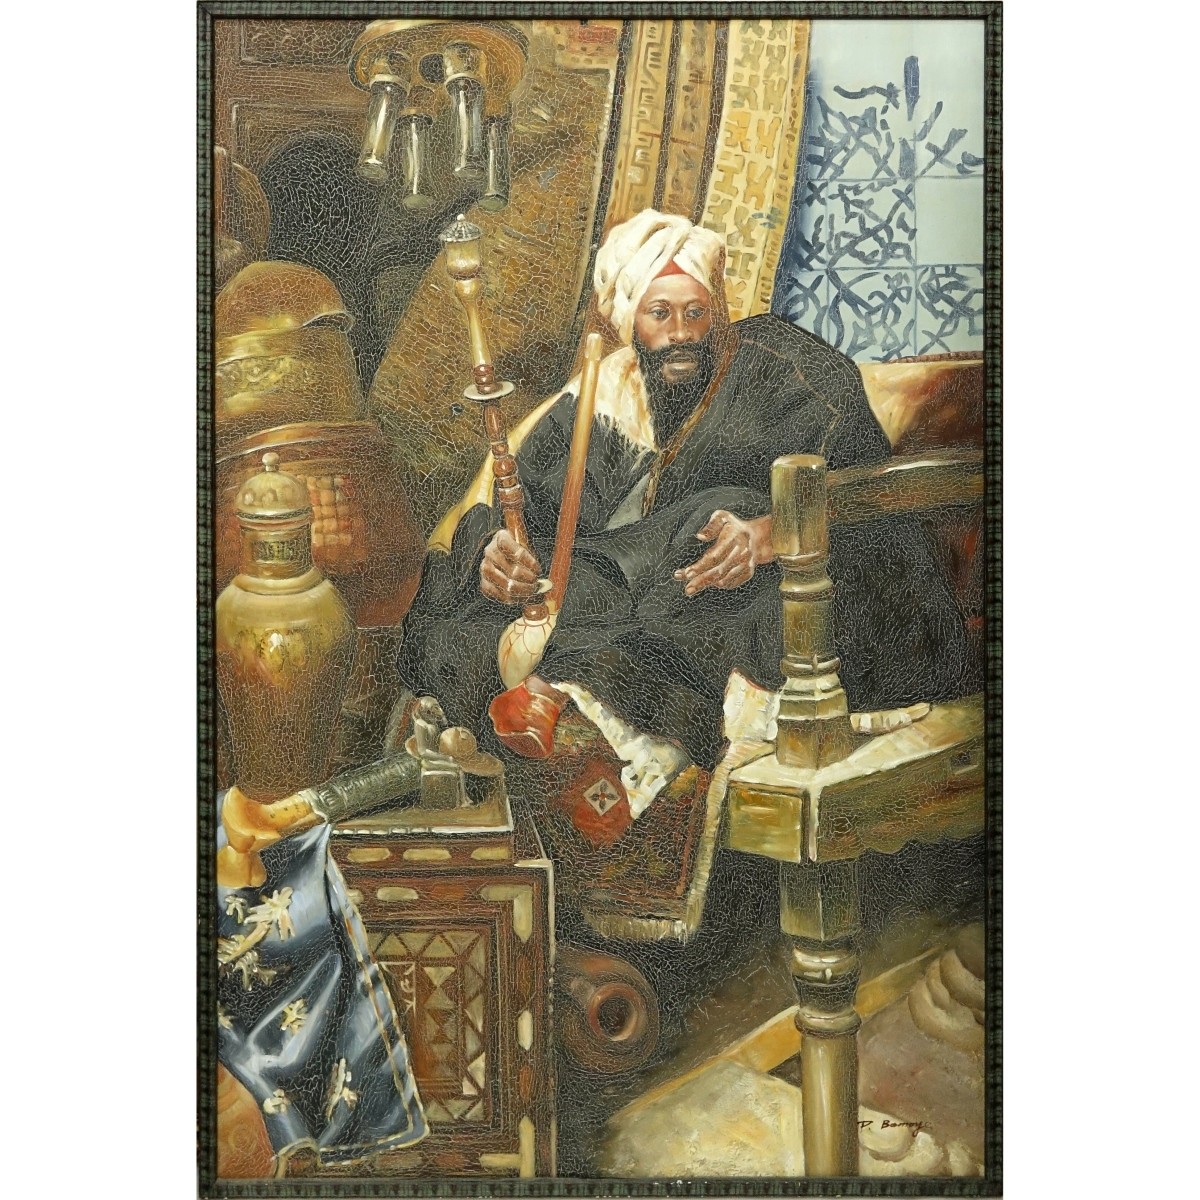 Orientalist School Oil On Canvas "Arabian King"